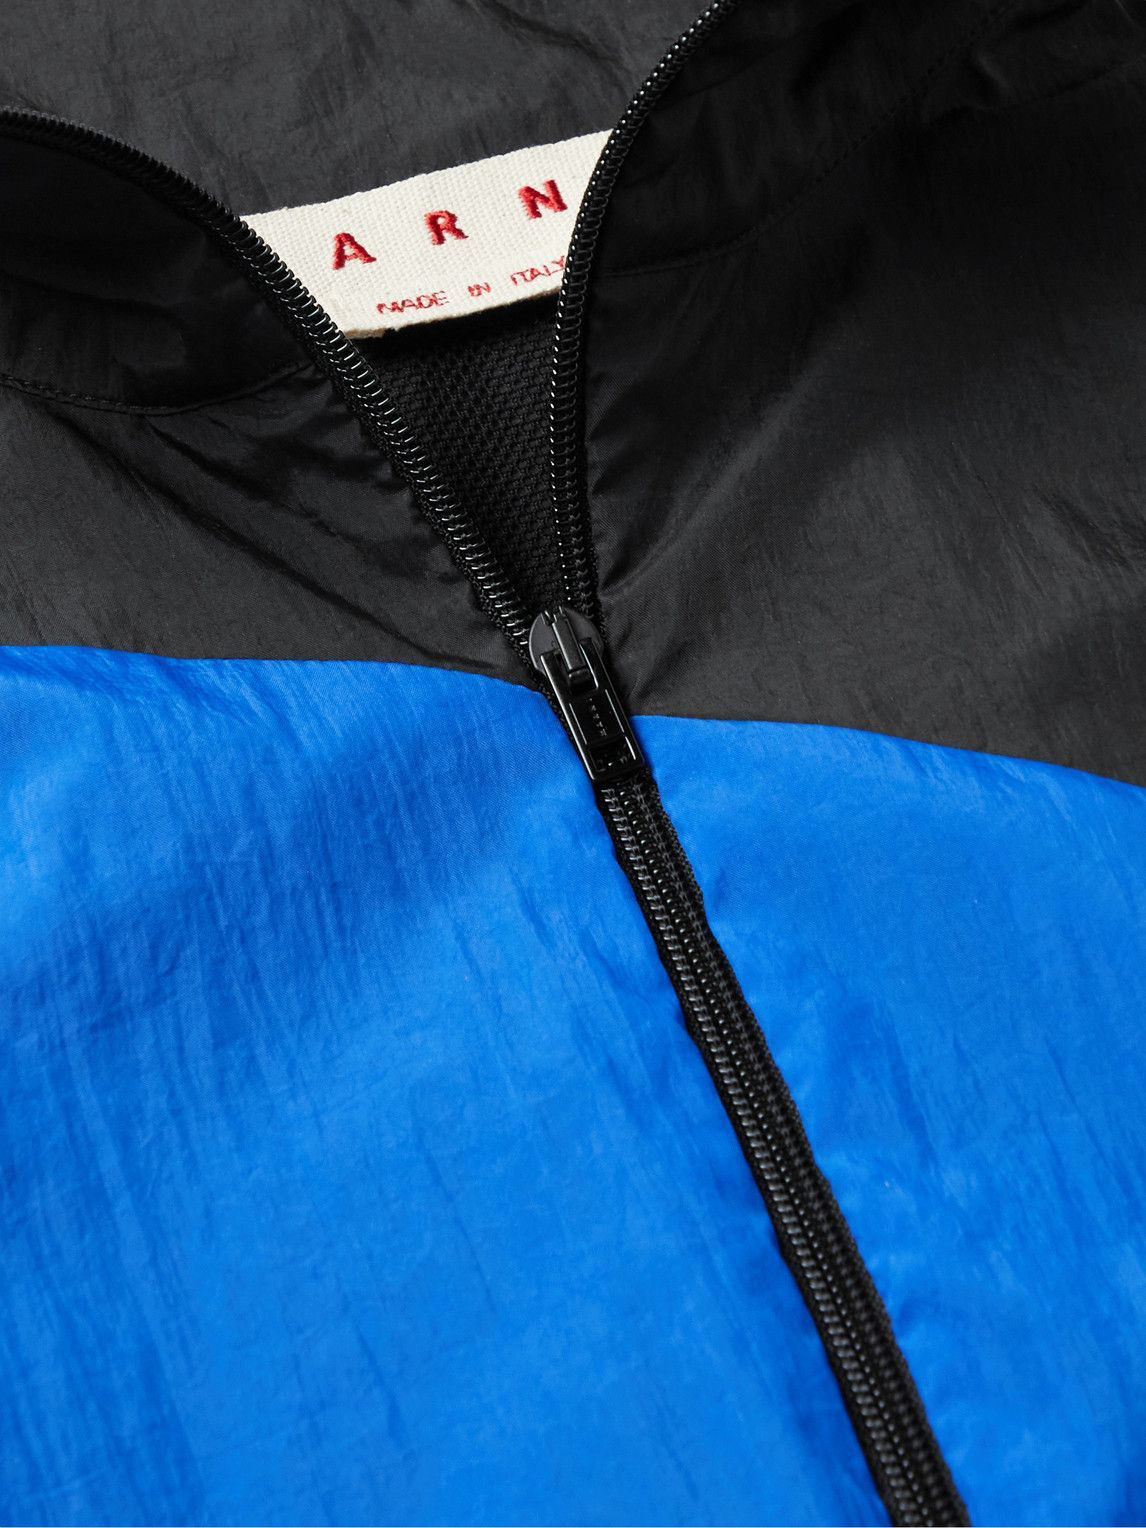 Marni - Oversized Striped Nylon Jacket - Blue Marni